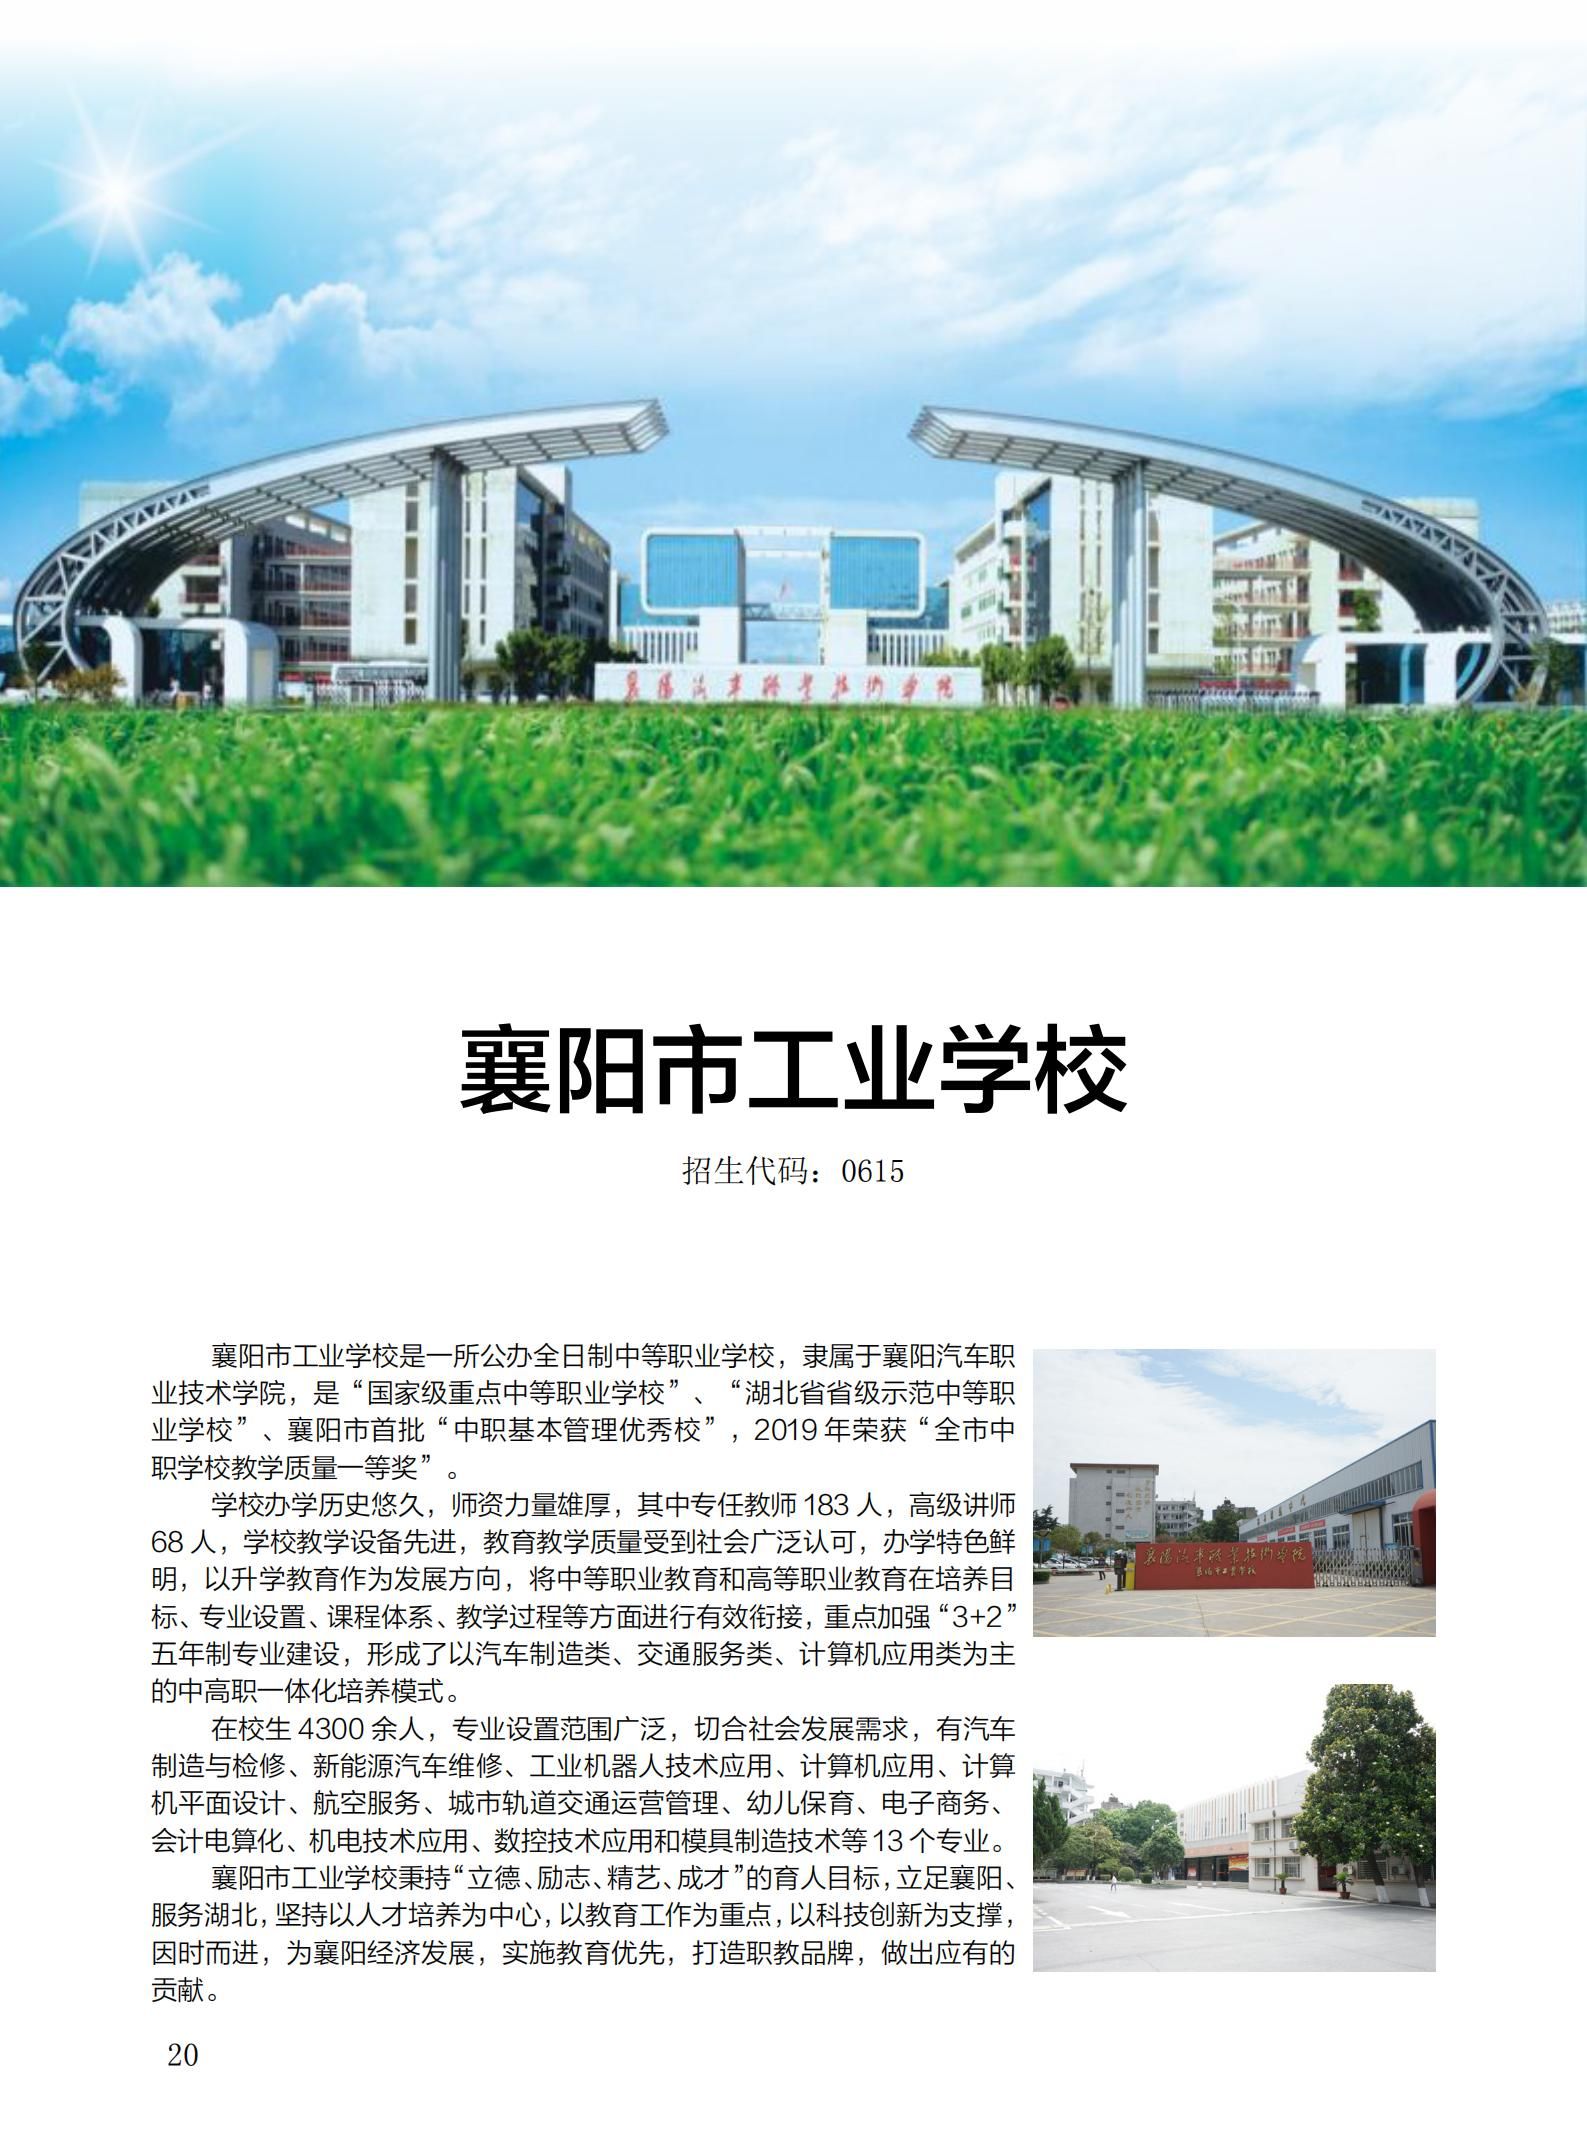 襄阳市工业学校(招生代码:0615)